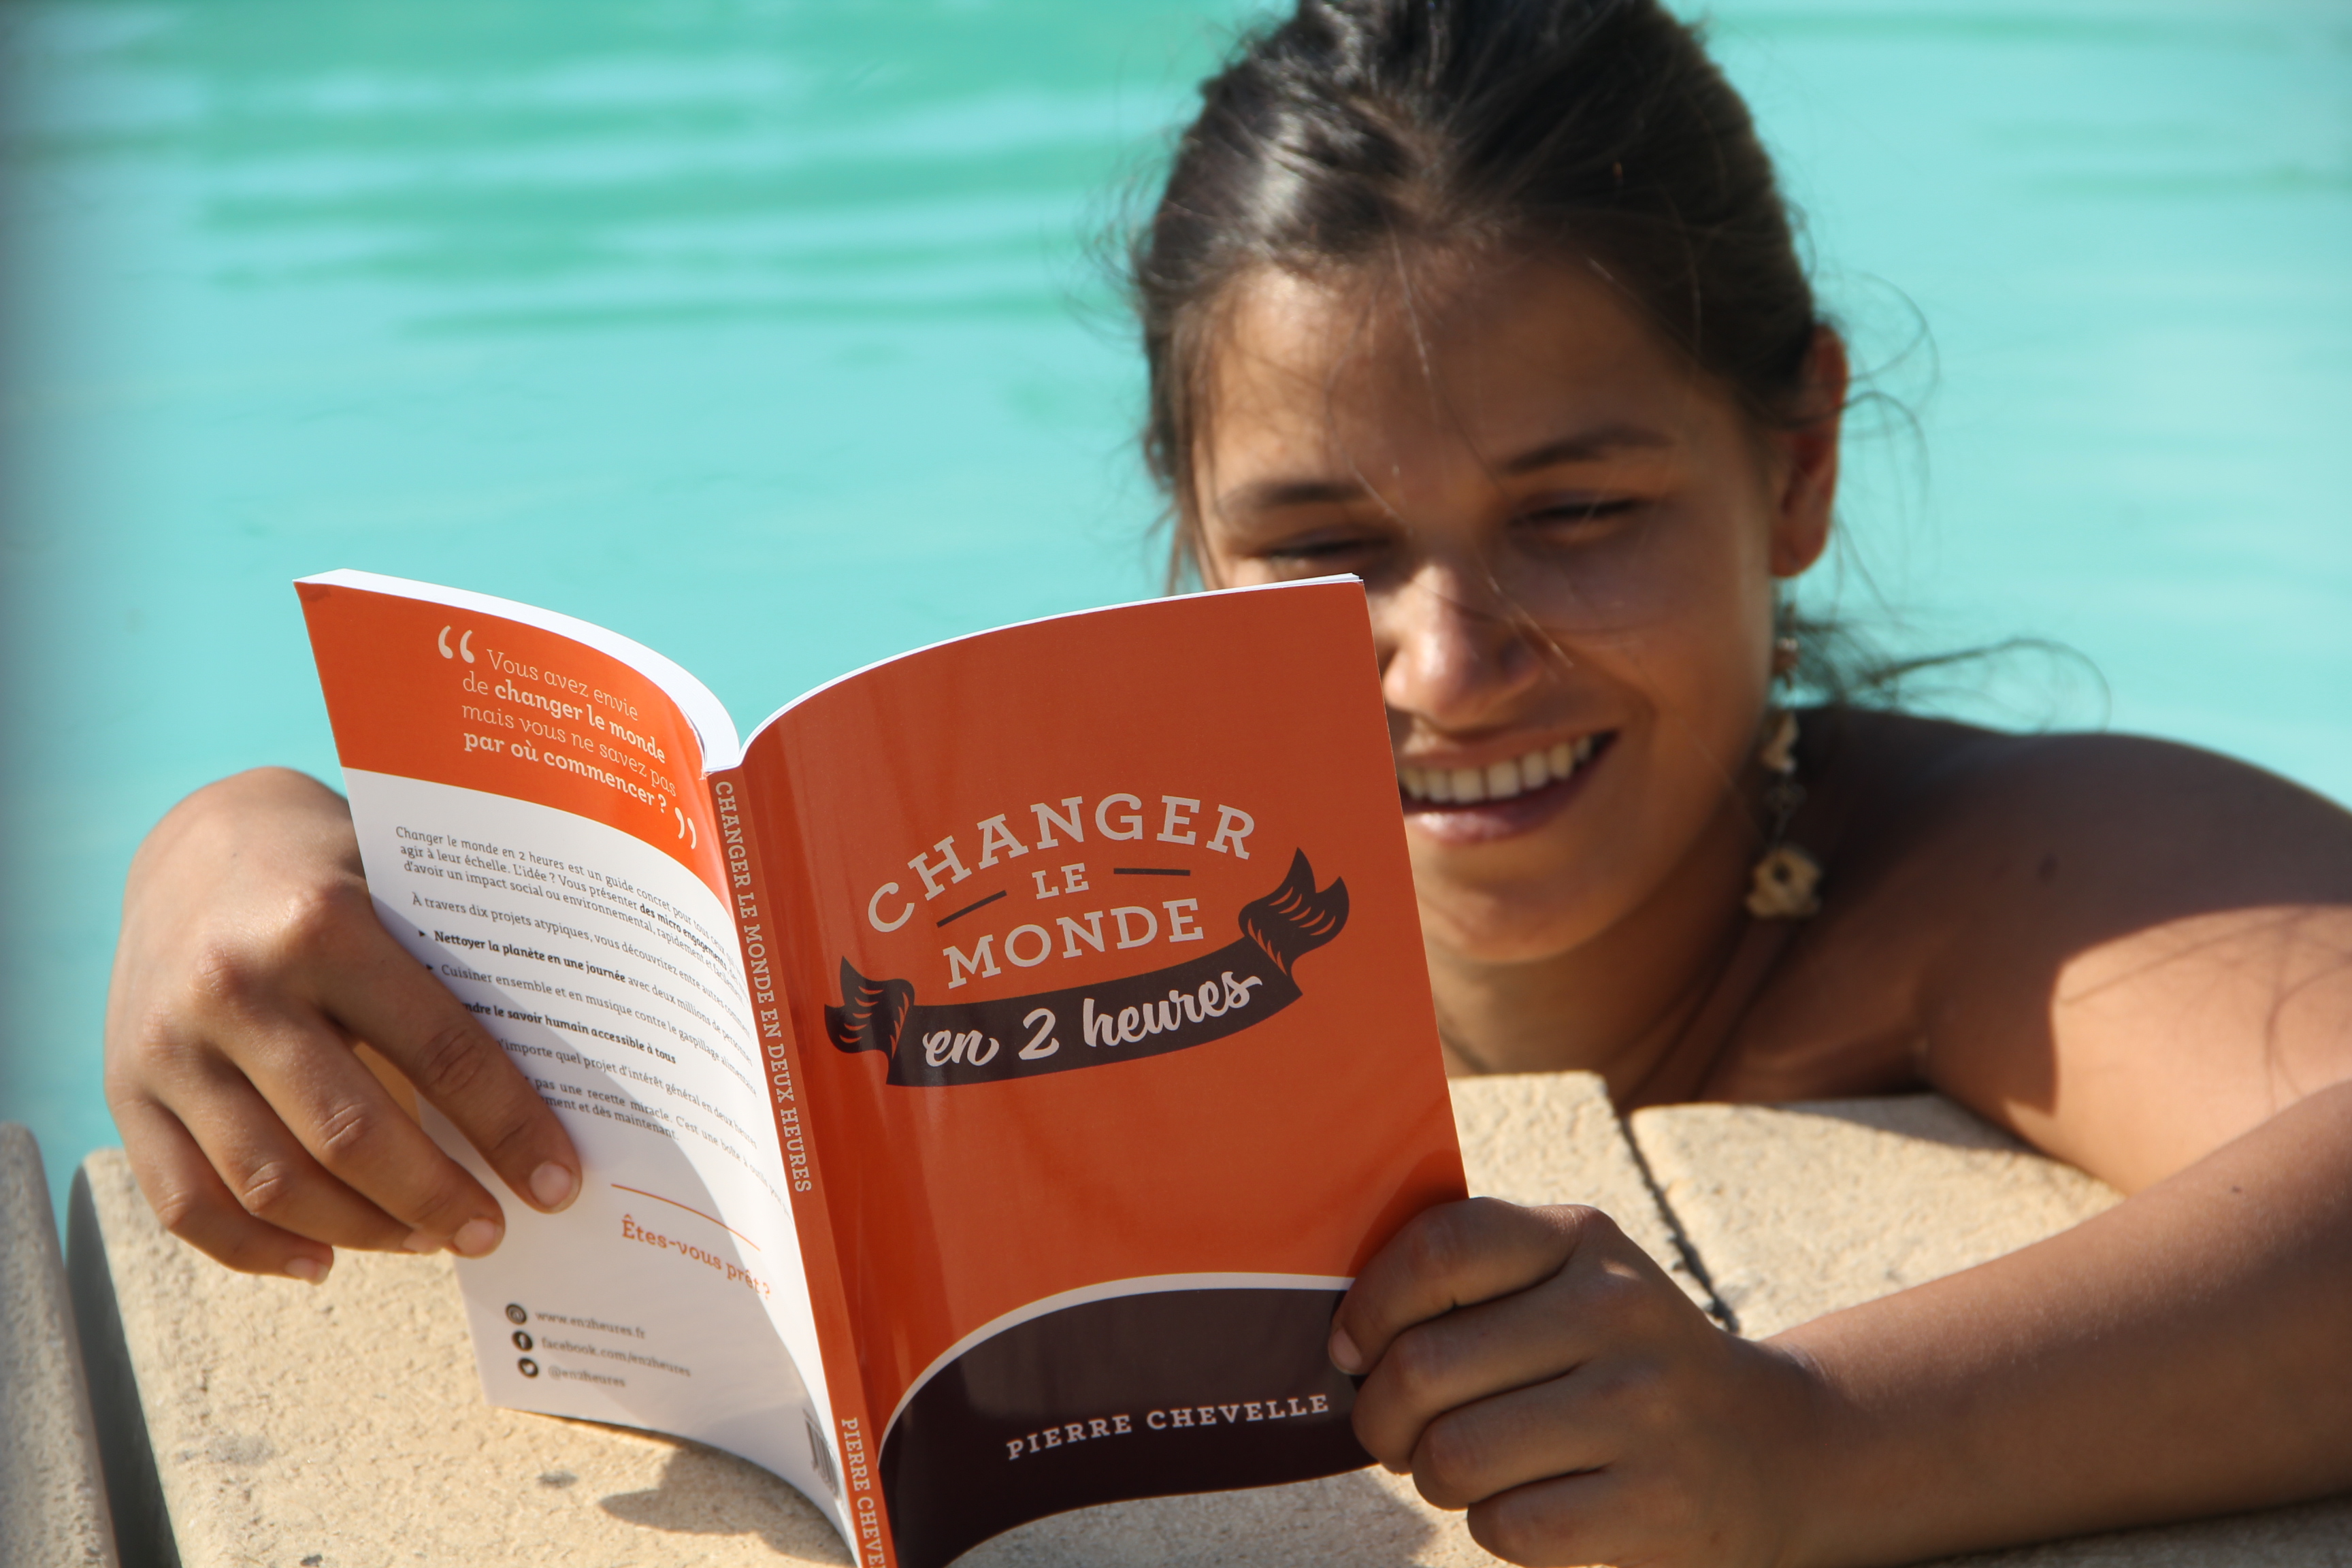 Lectrice changer le monde en 2 heures piscine